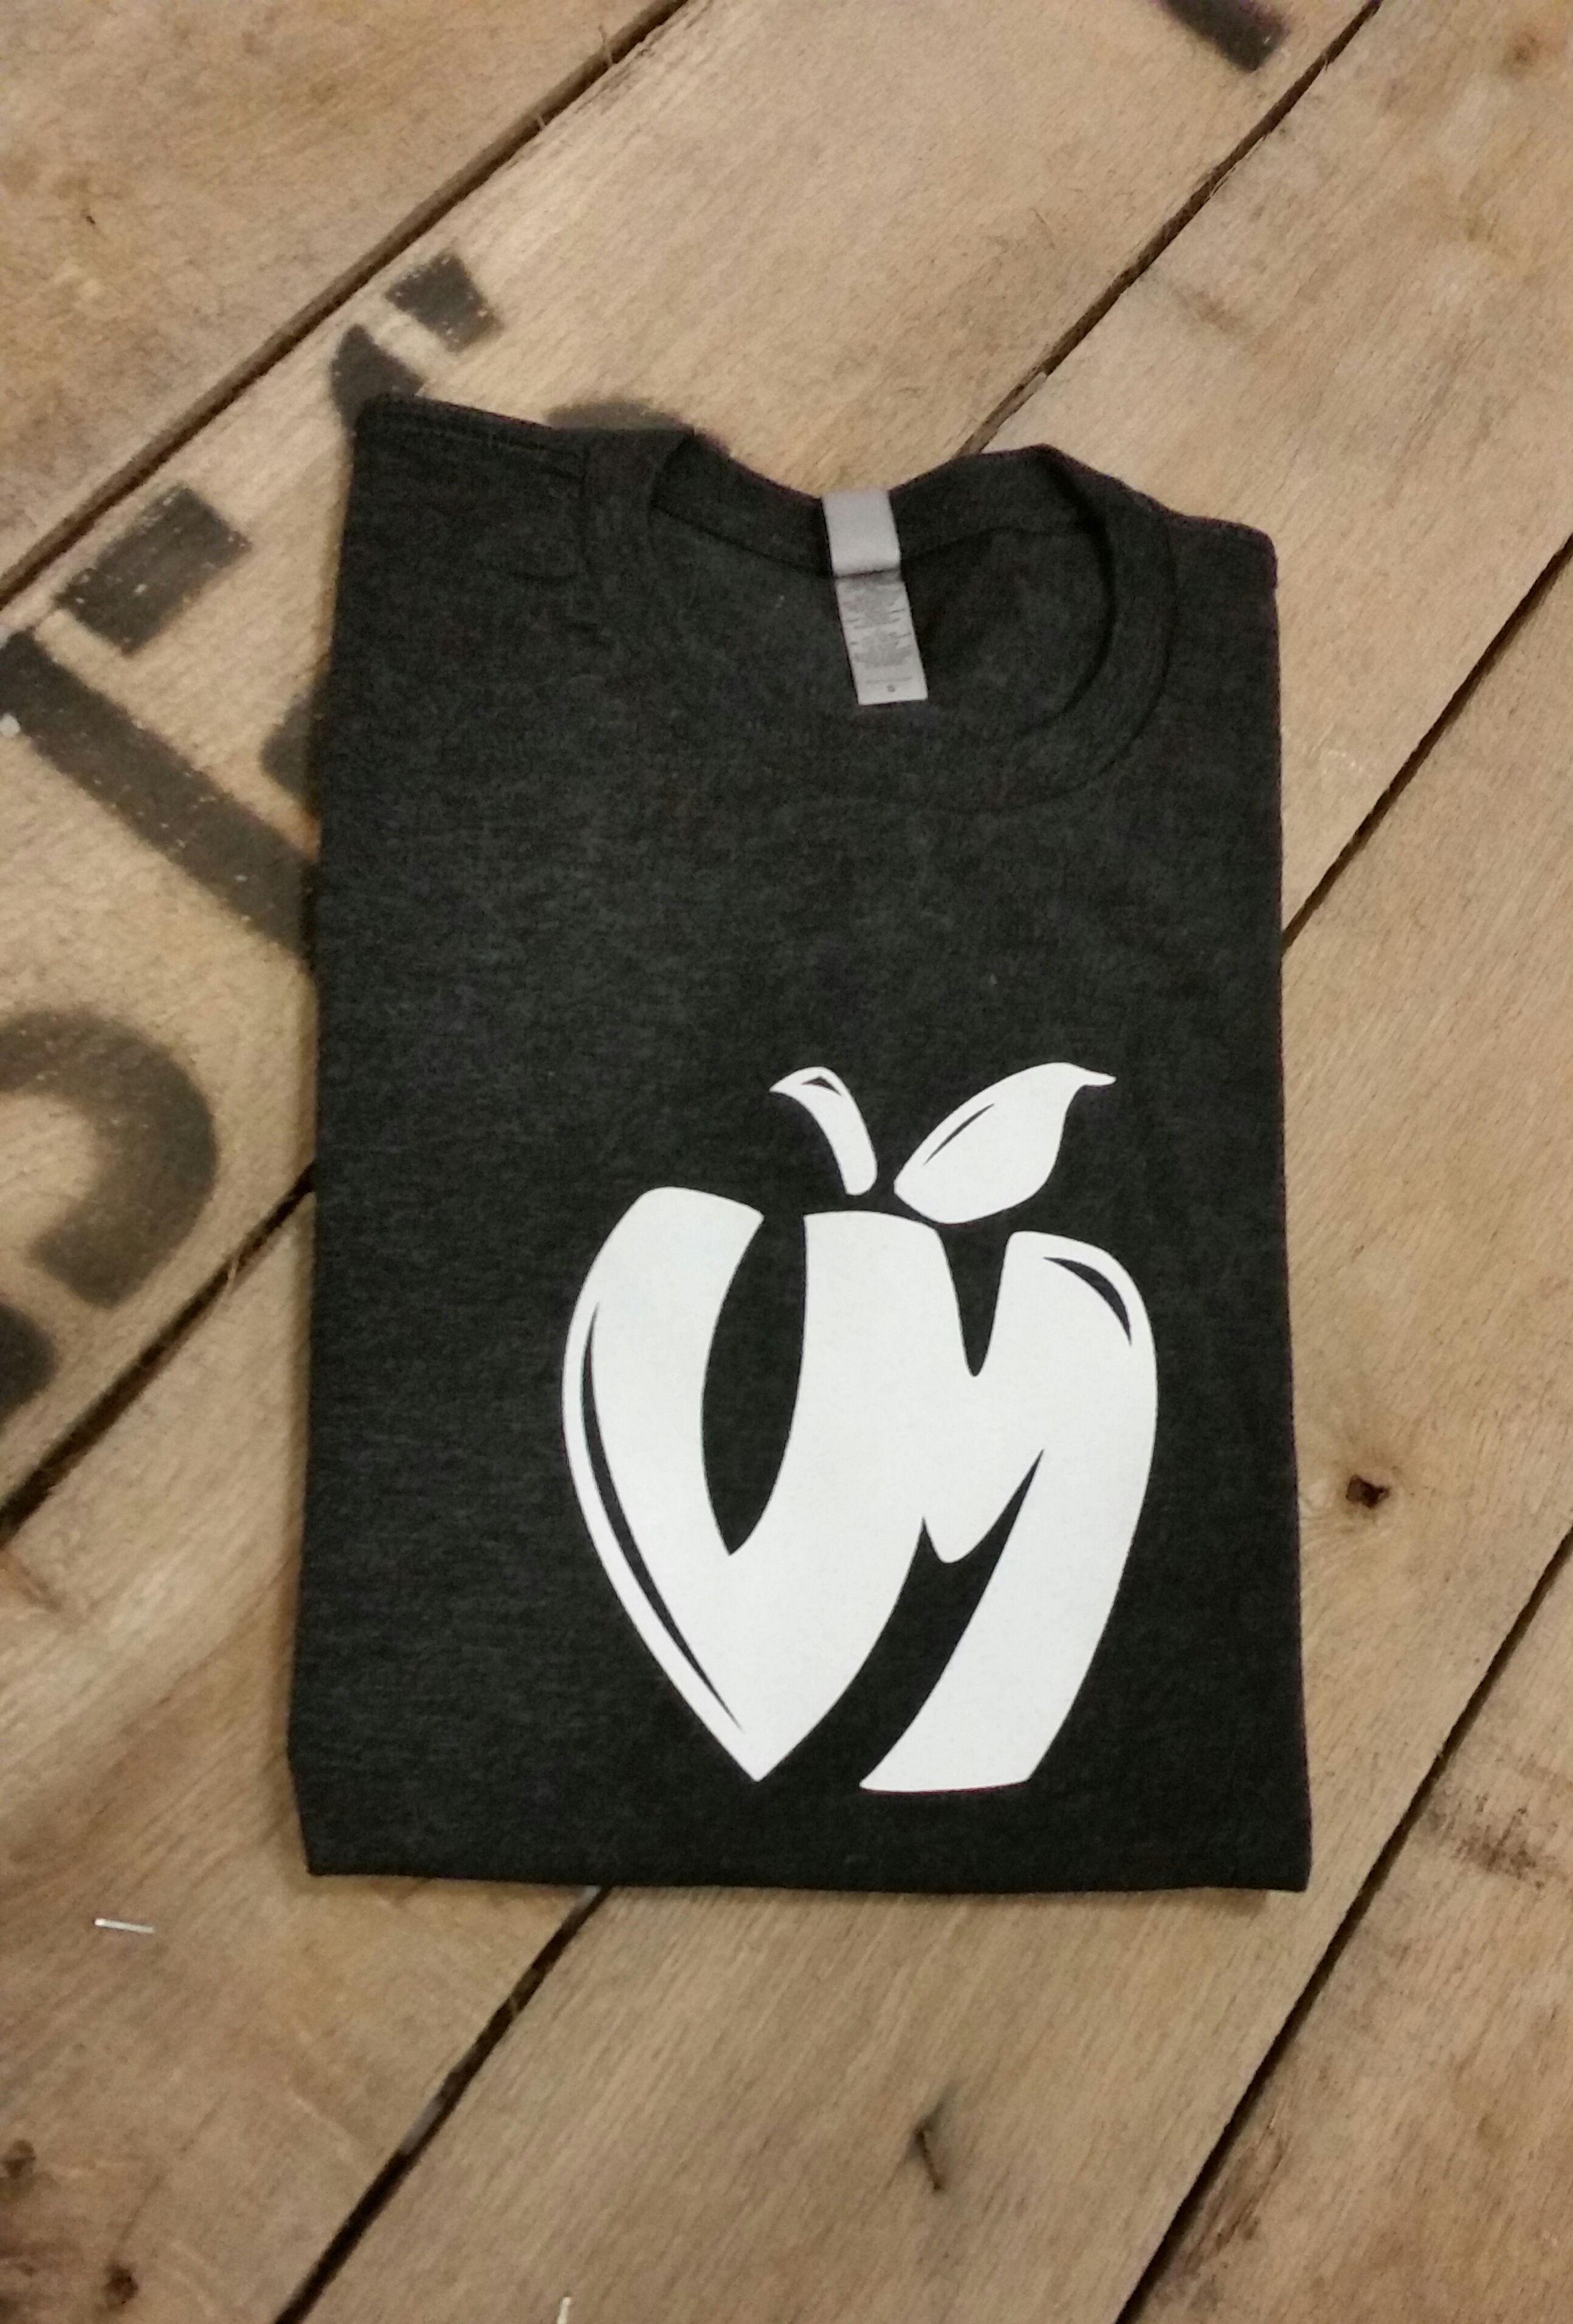 Mill Logo - Classic Vander Mill Logo T Shirt